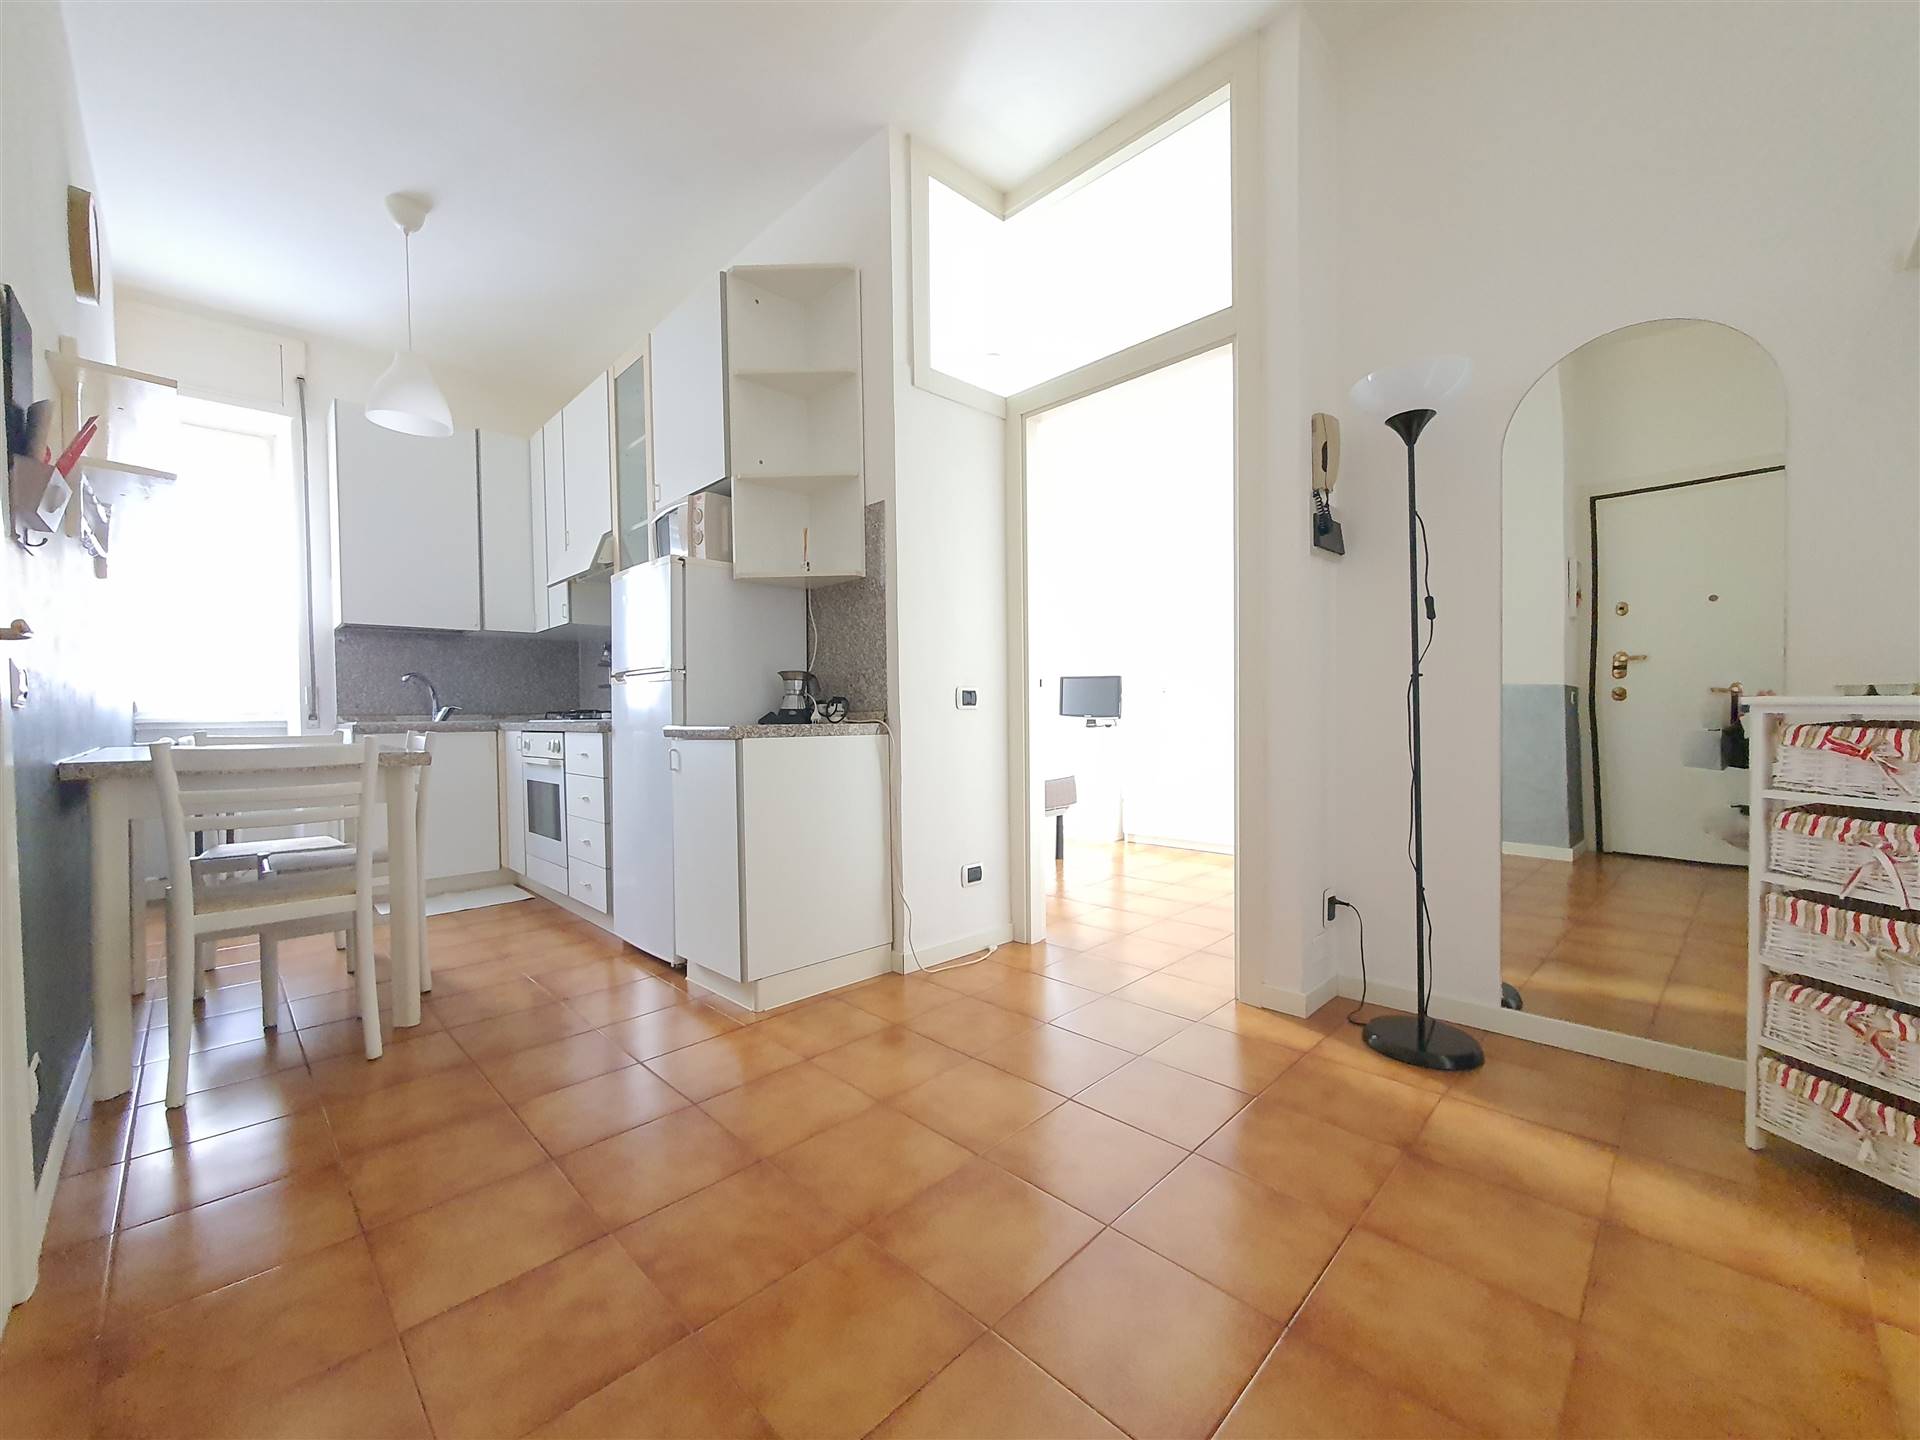 Appartamento in vendita a Malgrate, 2 locali, prezzo € 39.000 | PortaleAgenzieImmobiliari.it